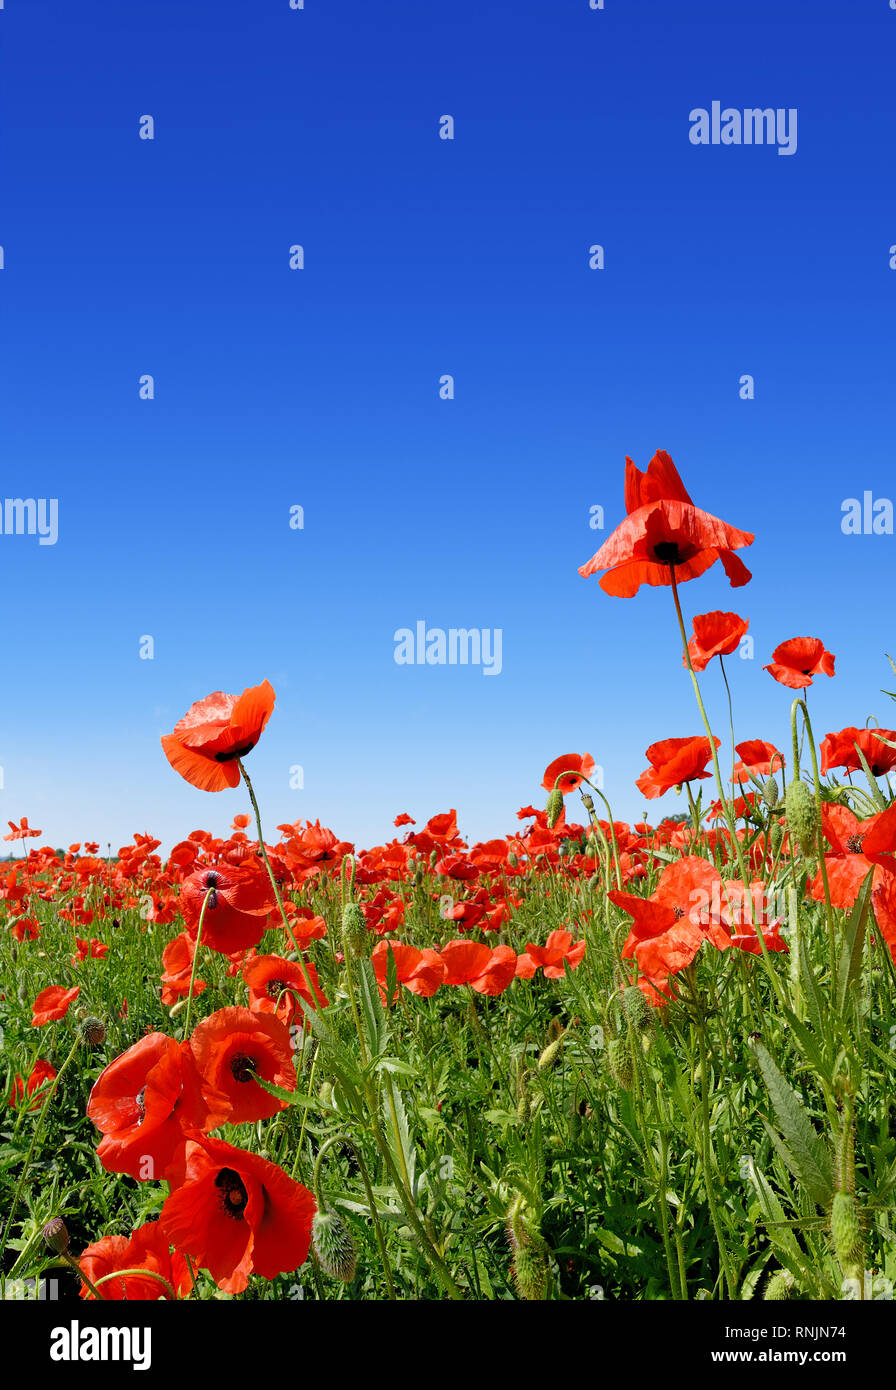 Idilio, campo lleno de hermosas amapolas rojas, cielo de fondo azul Foto de stock